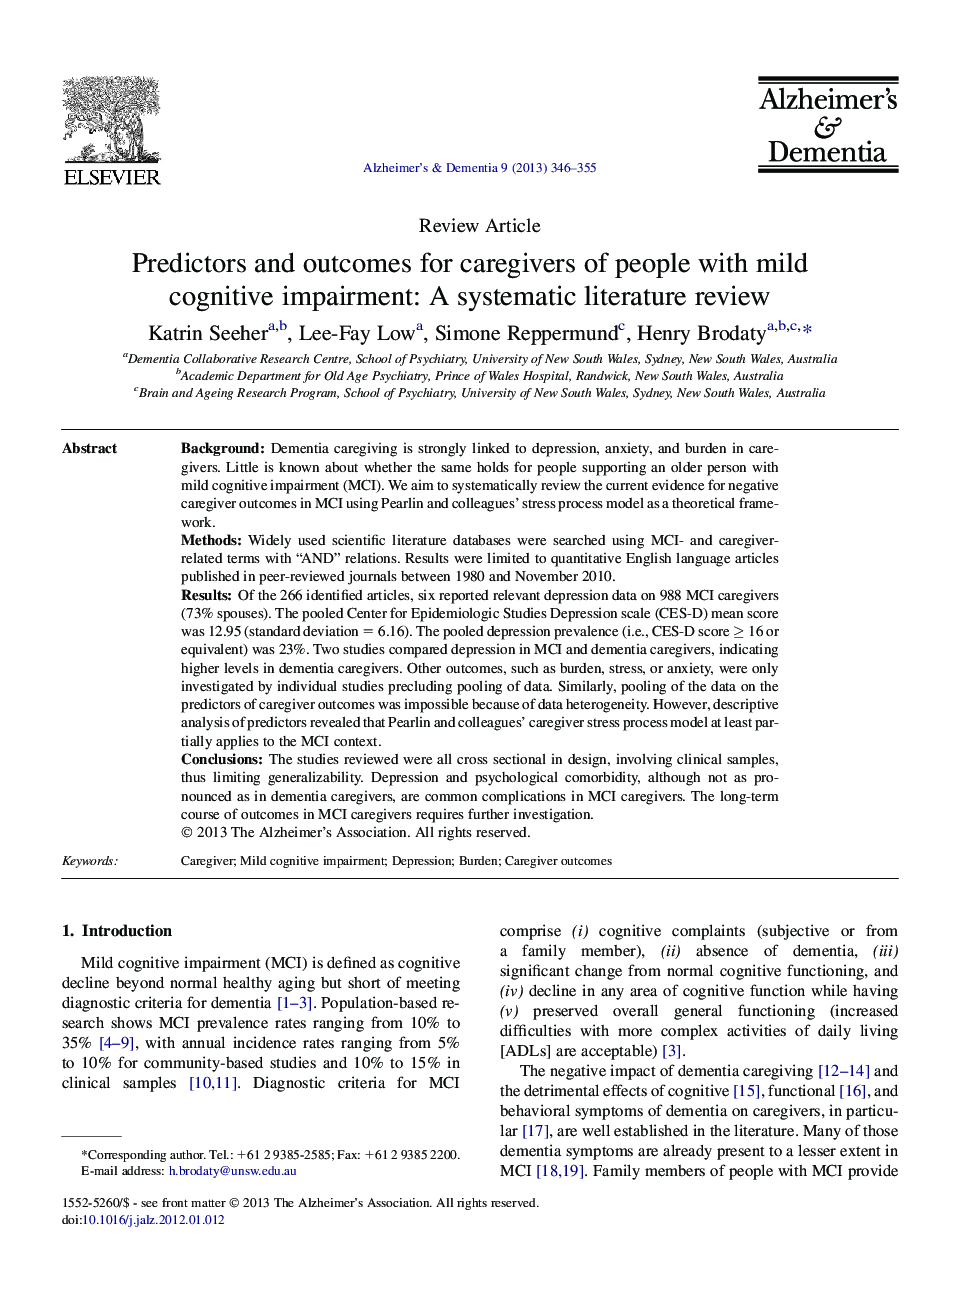 بررسی مقاله و پیش بینی کننده نتایج مراقبتی افراد مبتلا به اختلال شناختی خفیف: یک بررسی ادبی سیستماتیک 